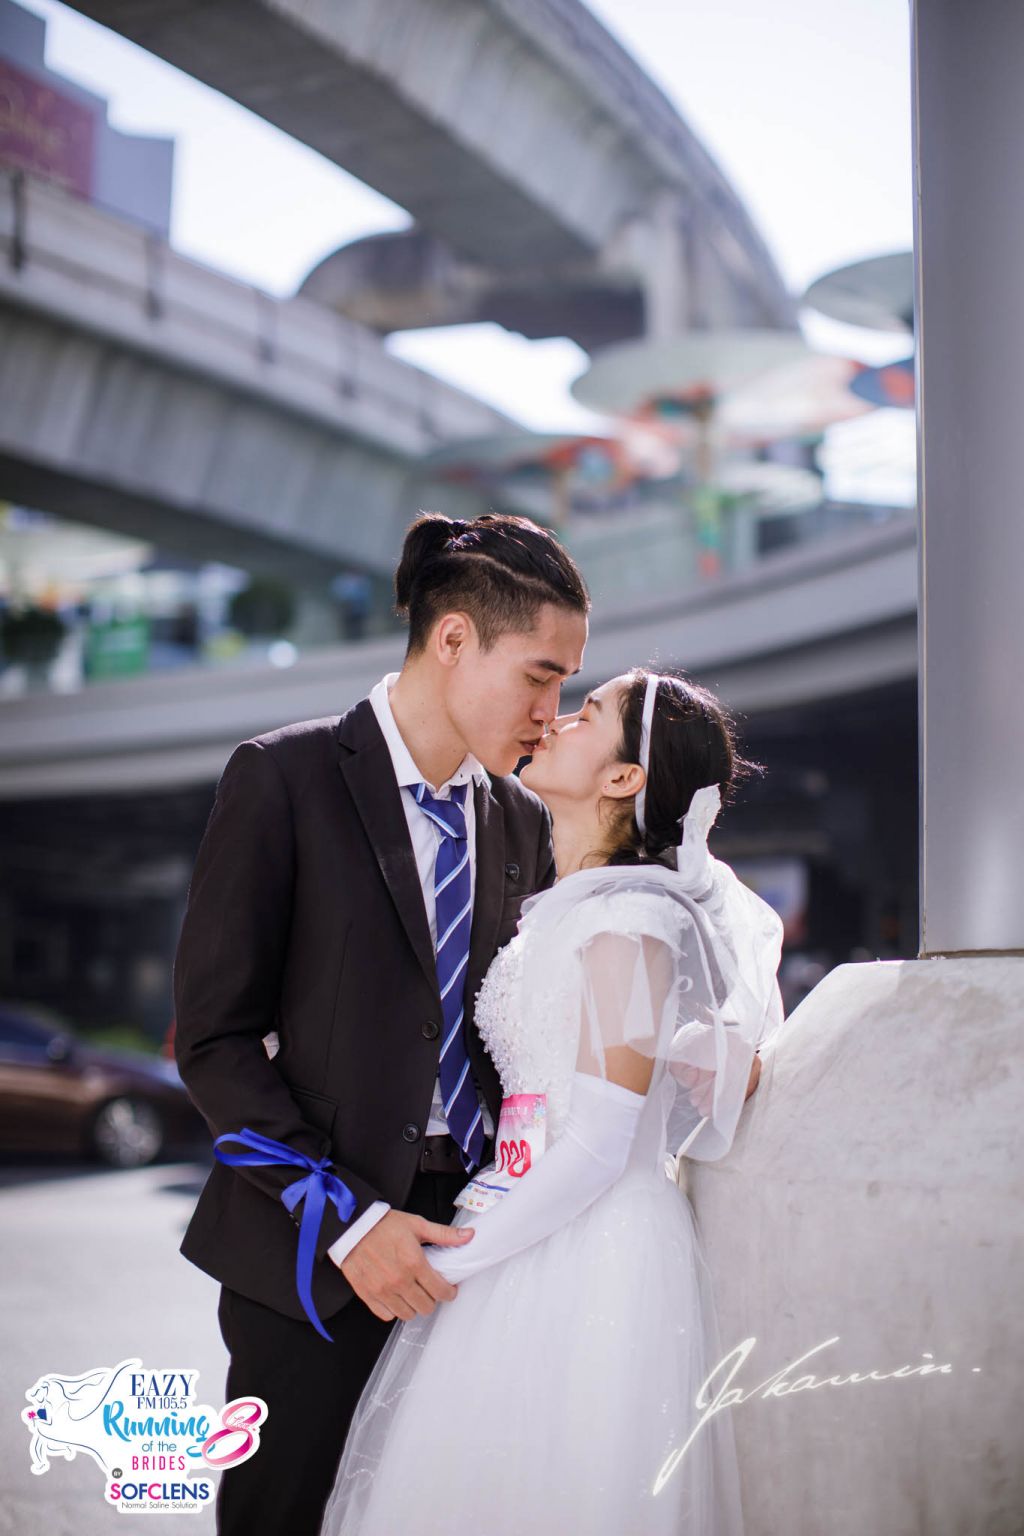 Running of the Brides: забег невест в Бангкоке невест, ноября, составил, месяц, медовый, бриллиантами, колец, подарки, приза, главного, Кроме, около, миллионов, более, Главный, Бангкоке, гонке, трехкилометровой, соревновались, женихов